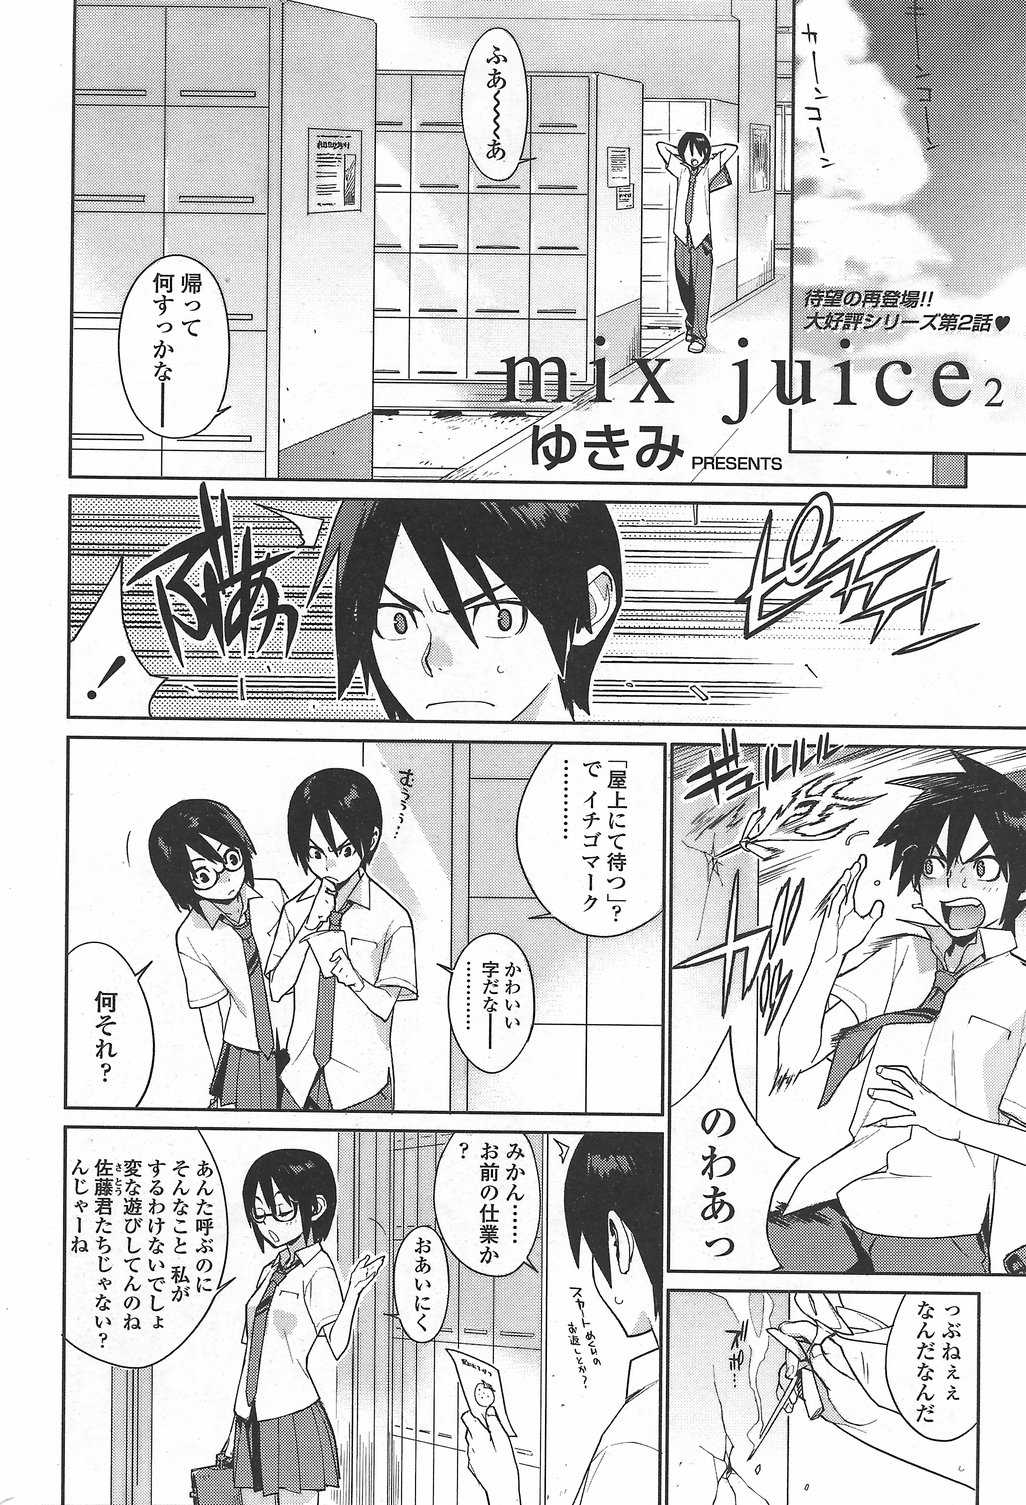 [yukimi] mix juice (chapters 1-5) 